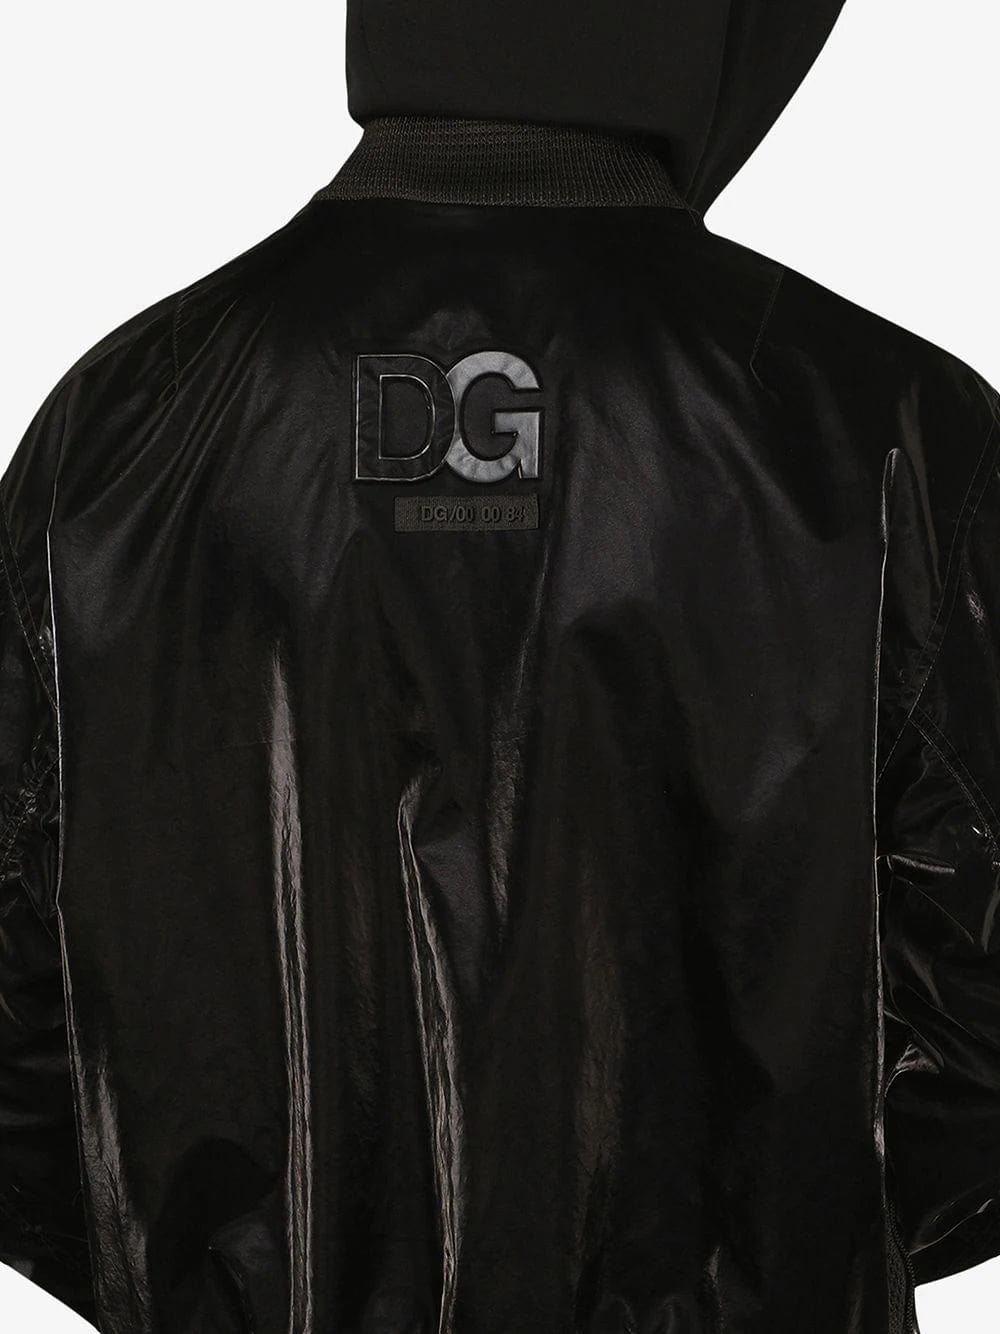 Dolce & Gabbana Varnished Hooded Bomber Jacket